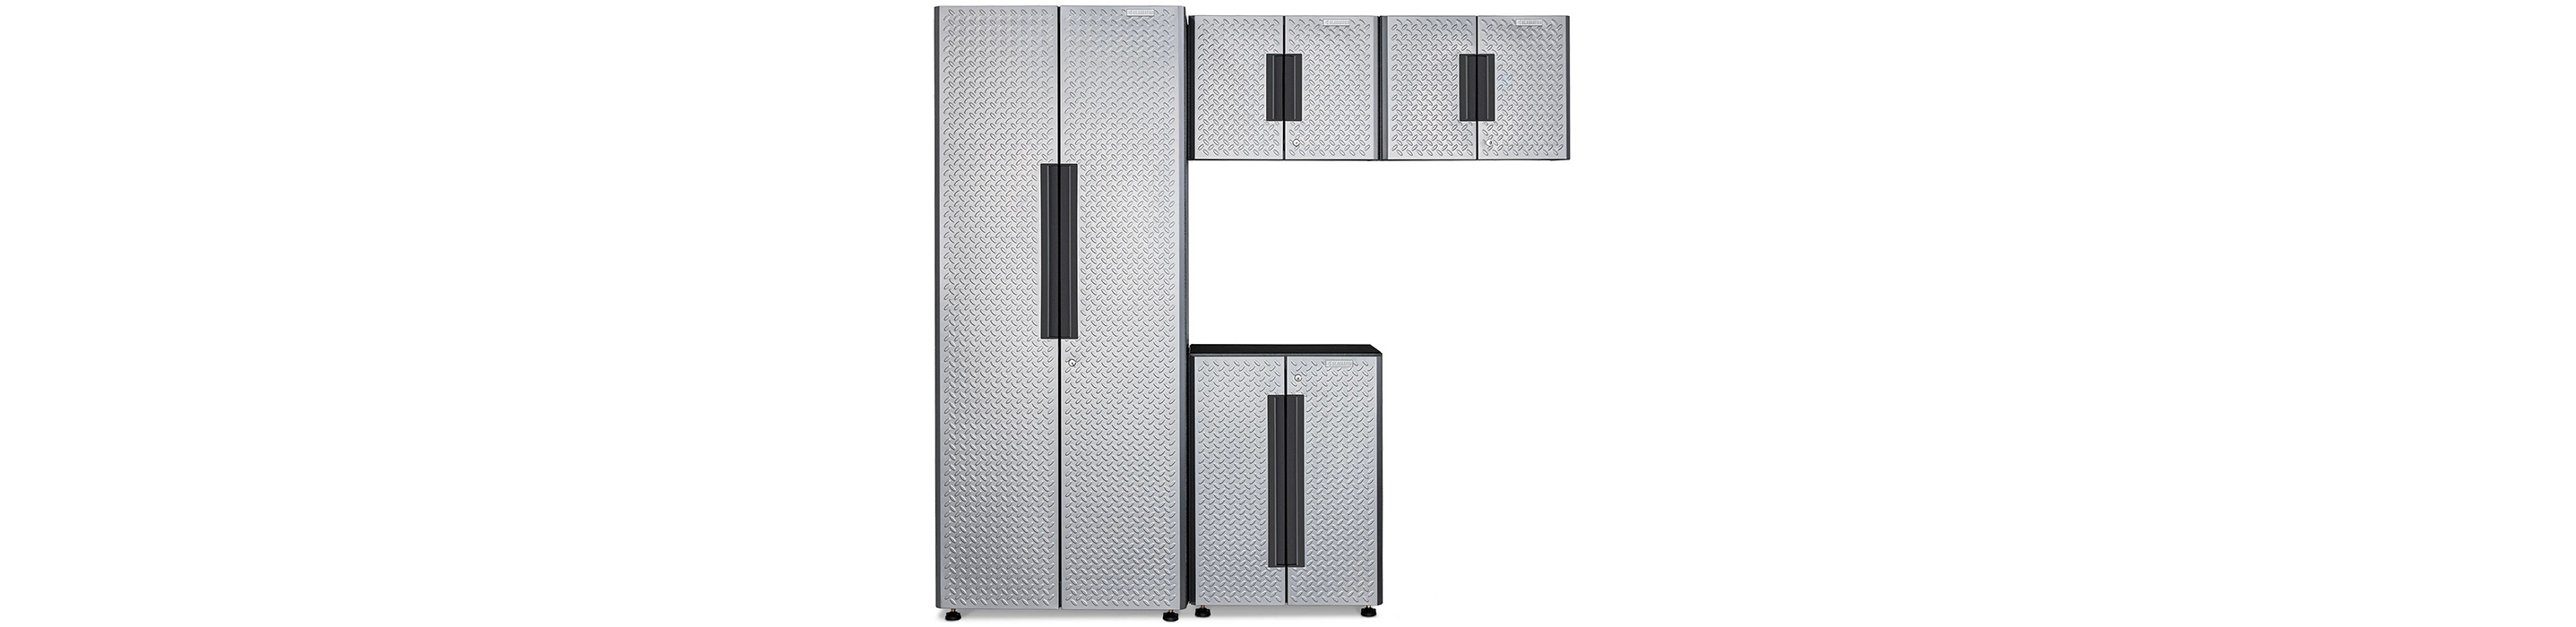 Un système d'armoires Gladiator Flex avec quatre armoires, dont deux armoires supérieures